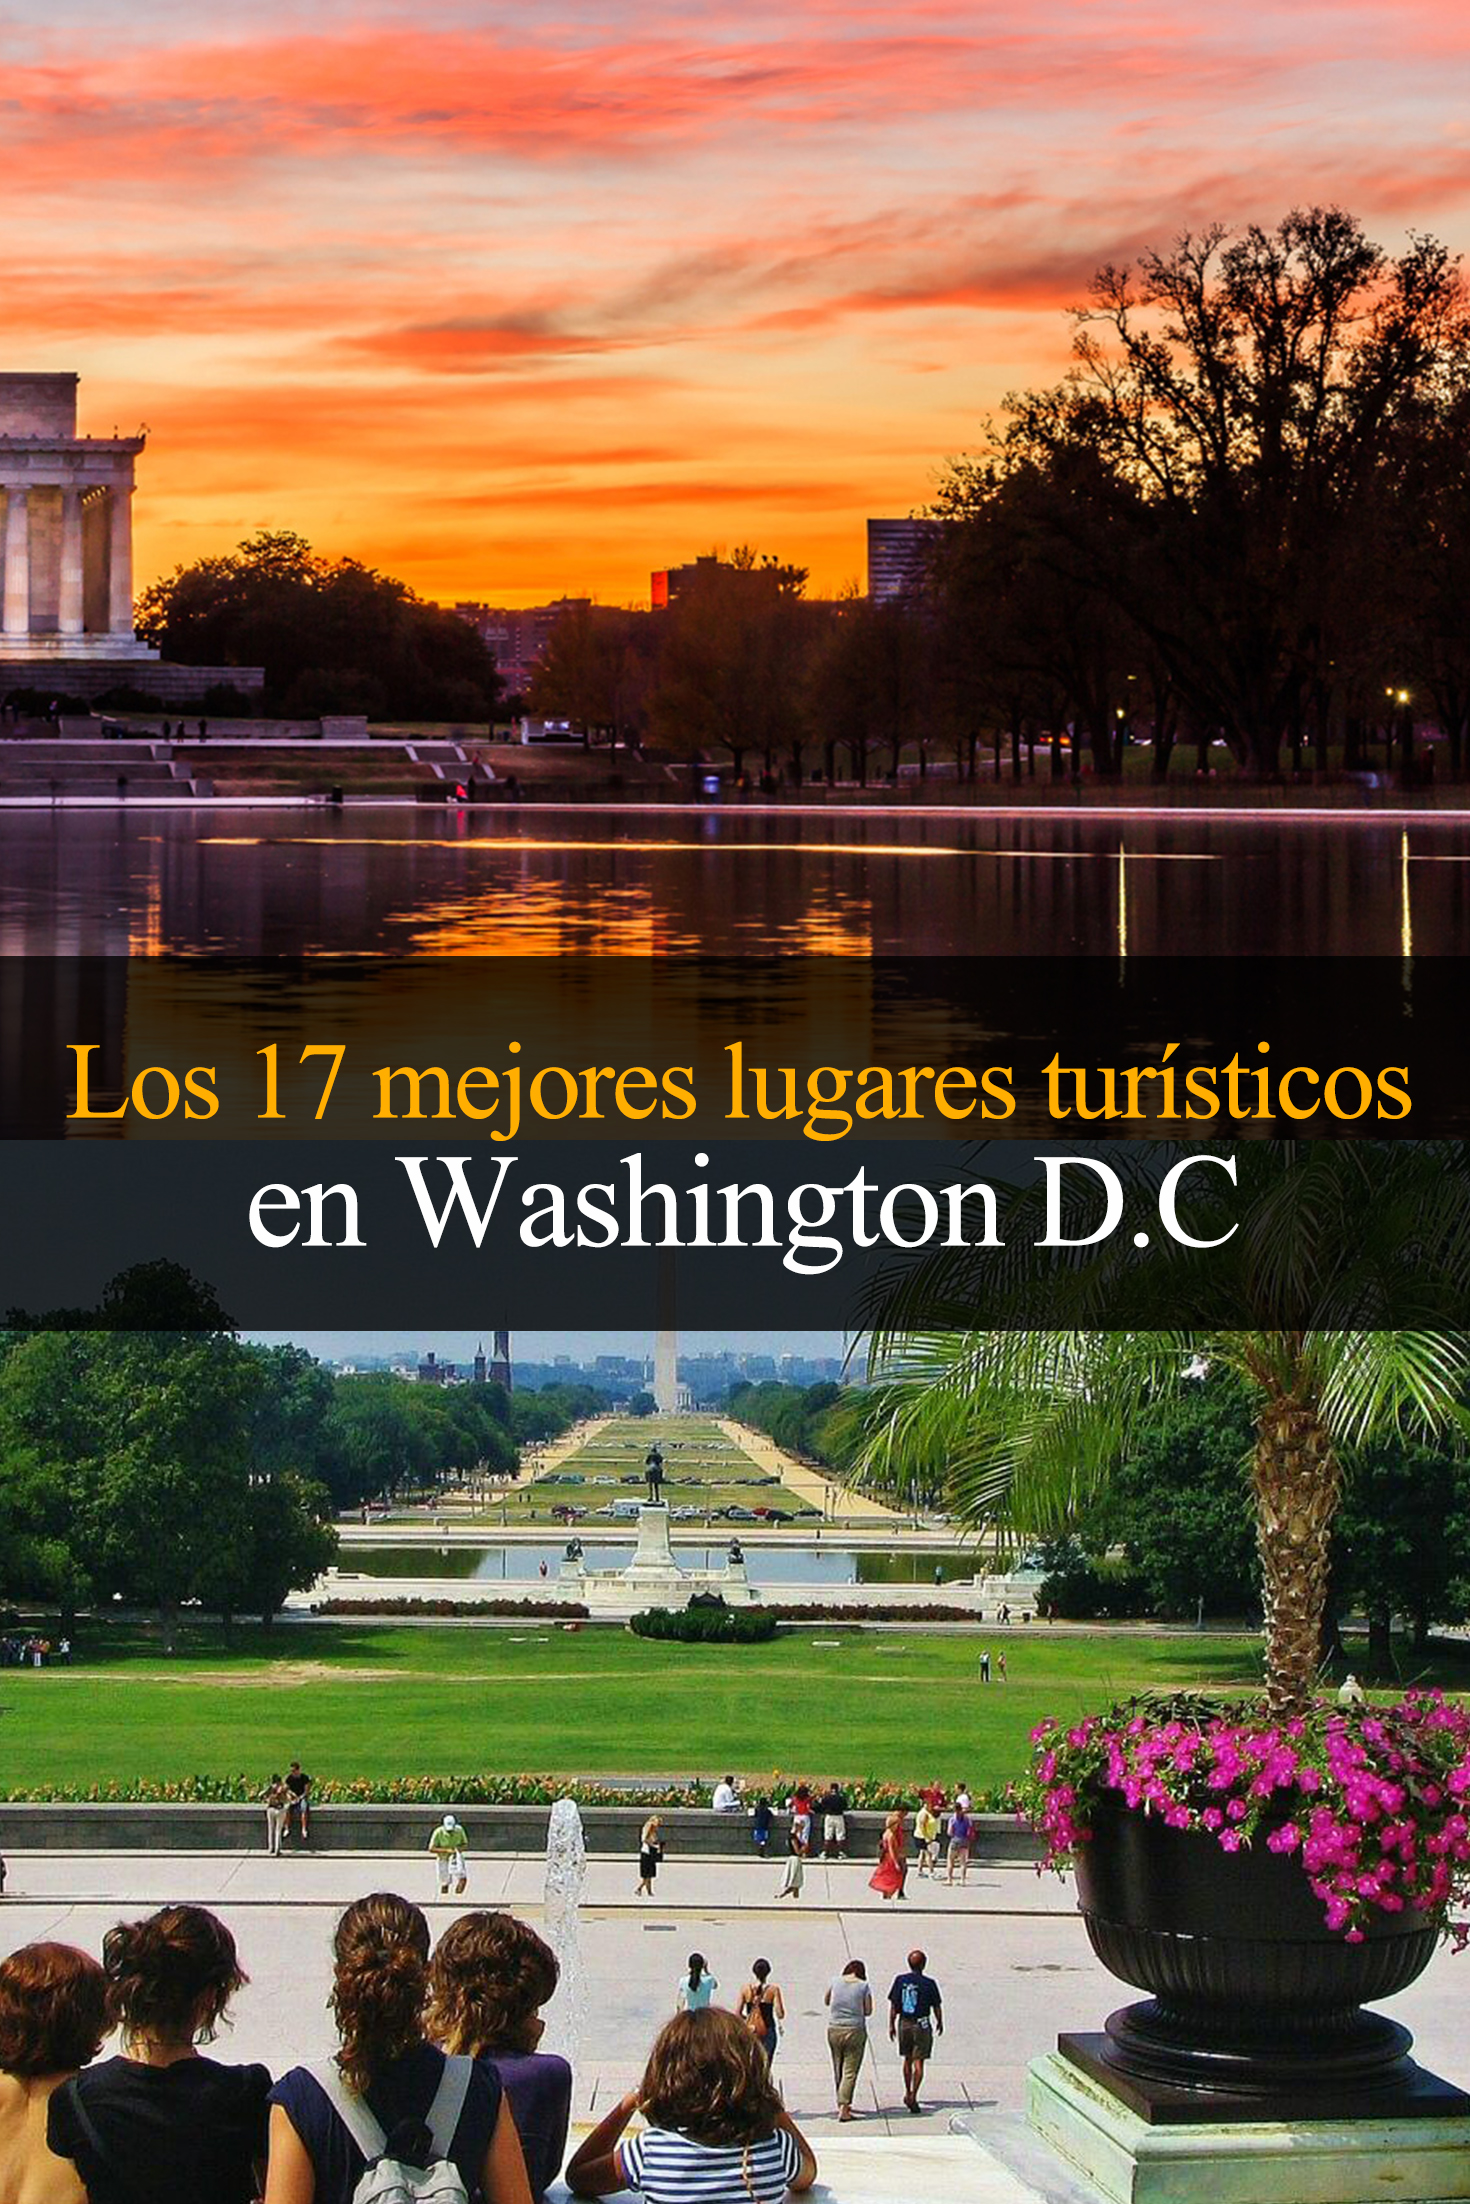 Los 17 mejores lugares turísticos en Washington D.C.